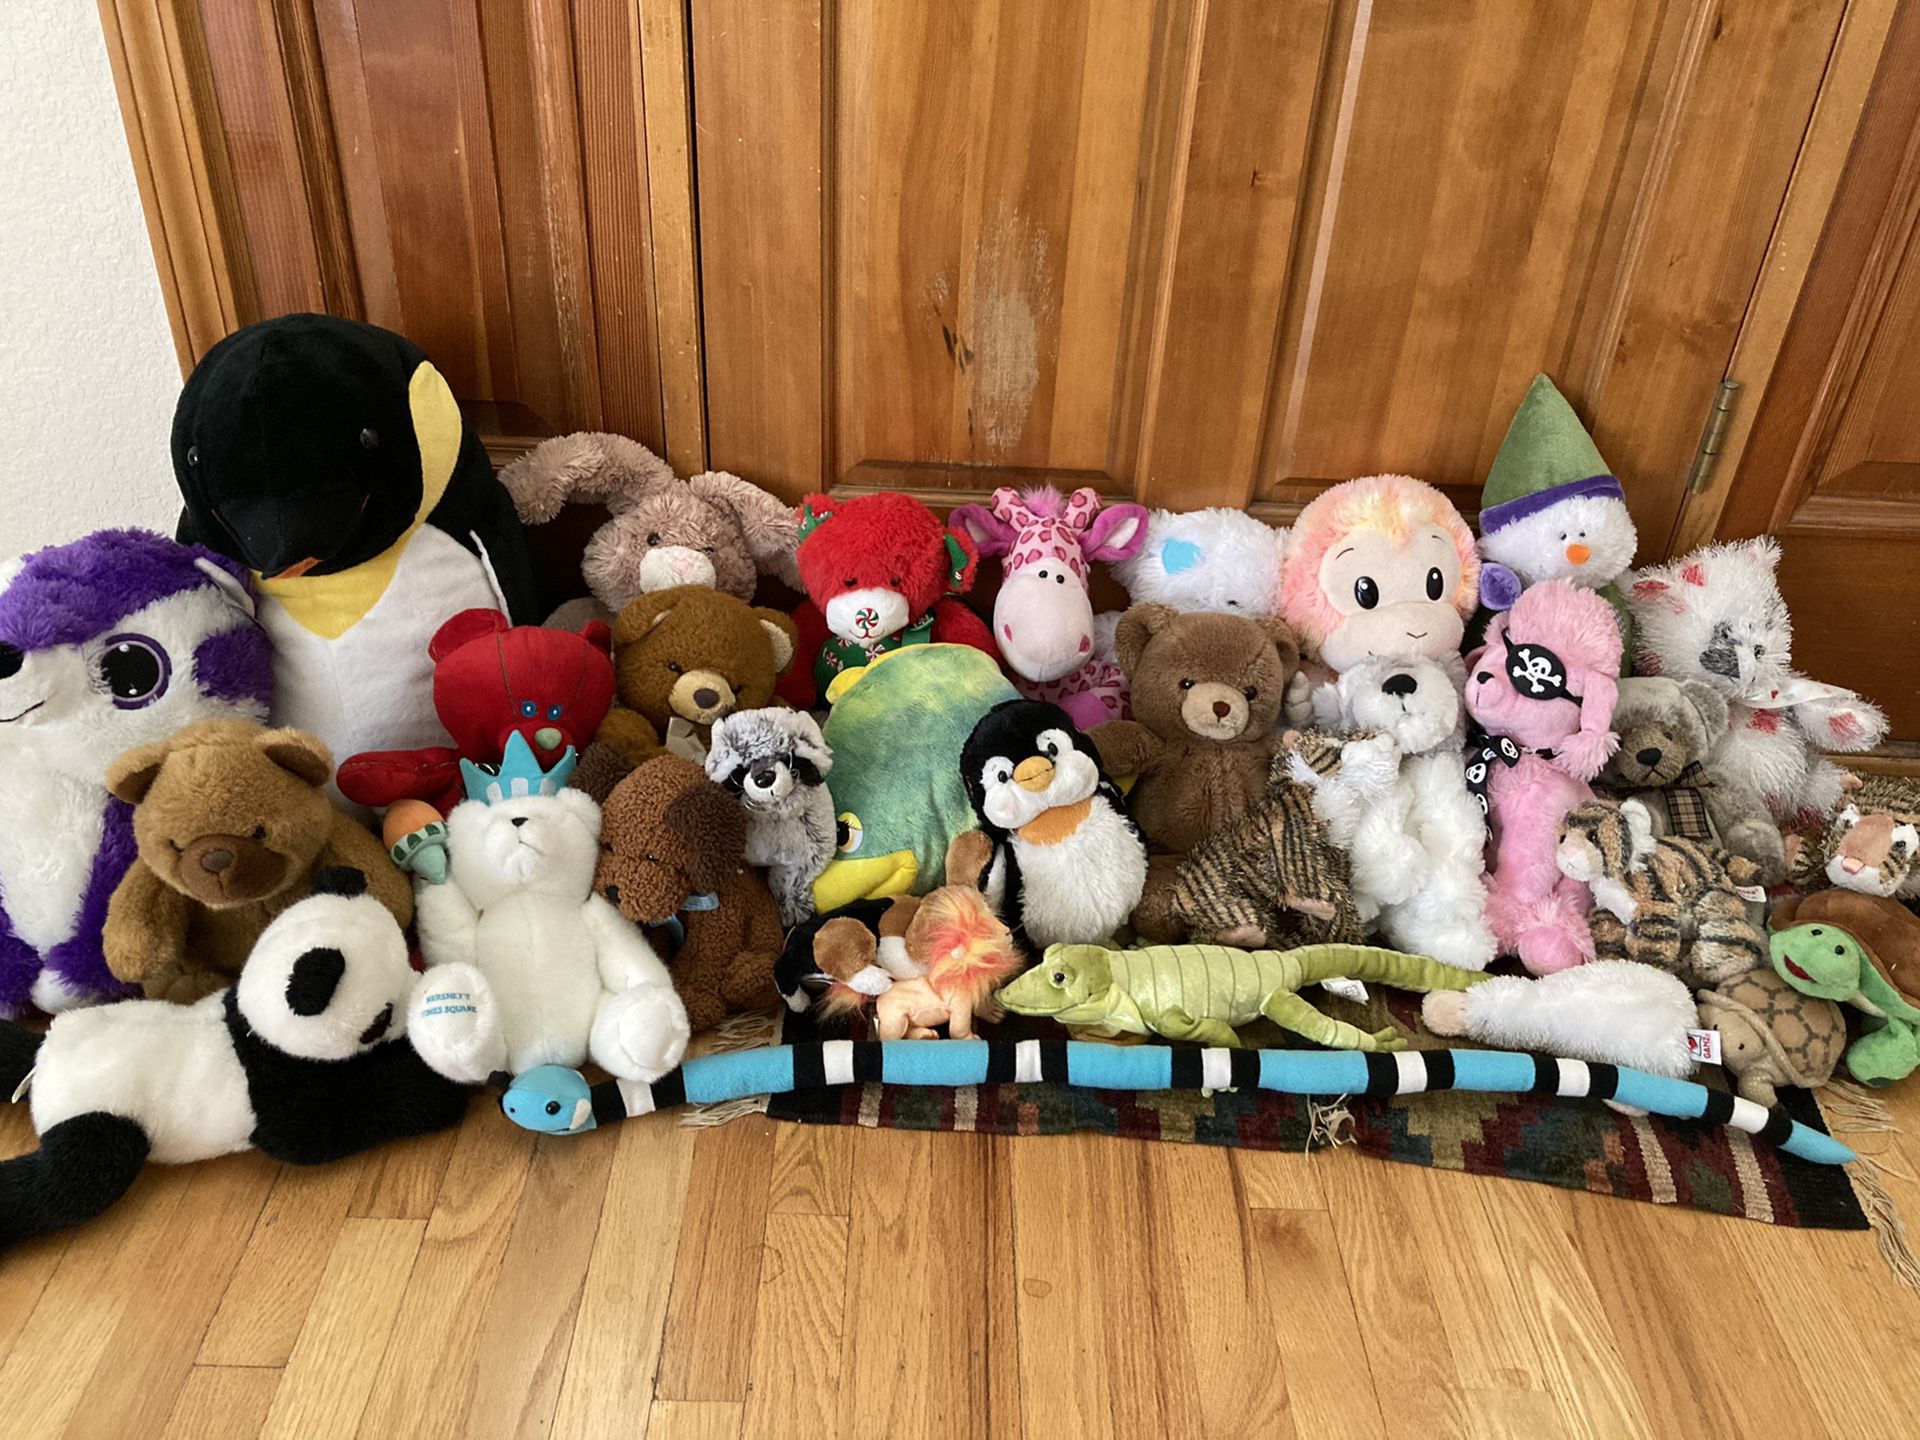 Stuffed animals/plushies